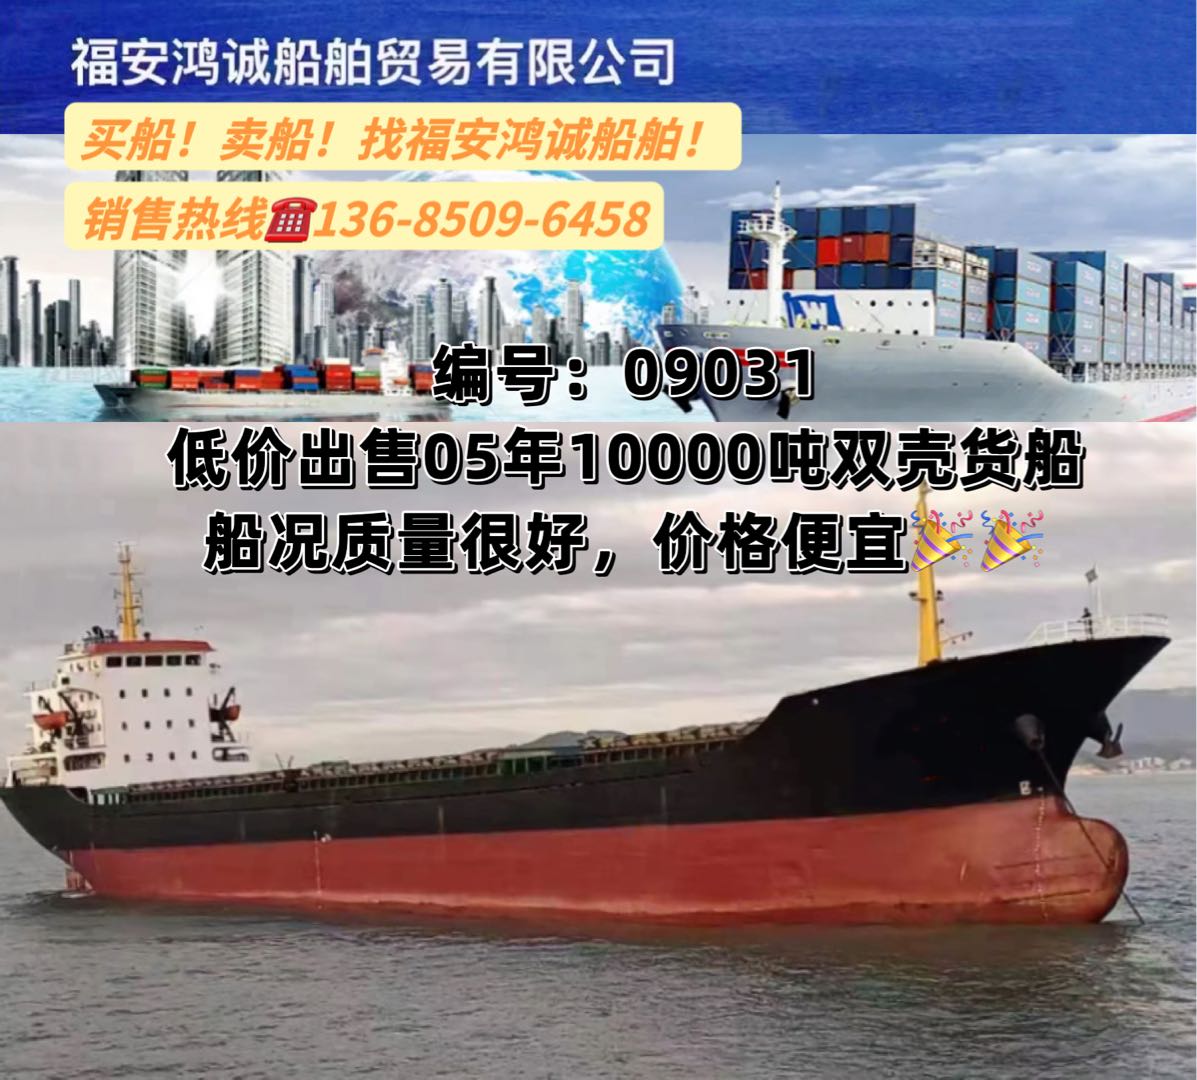 低价出售05年10000吨双壳干货船